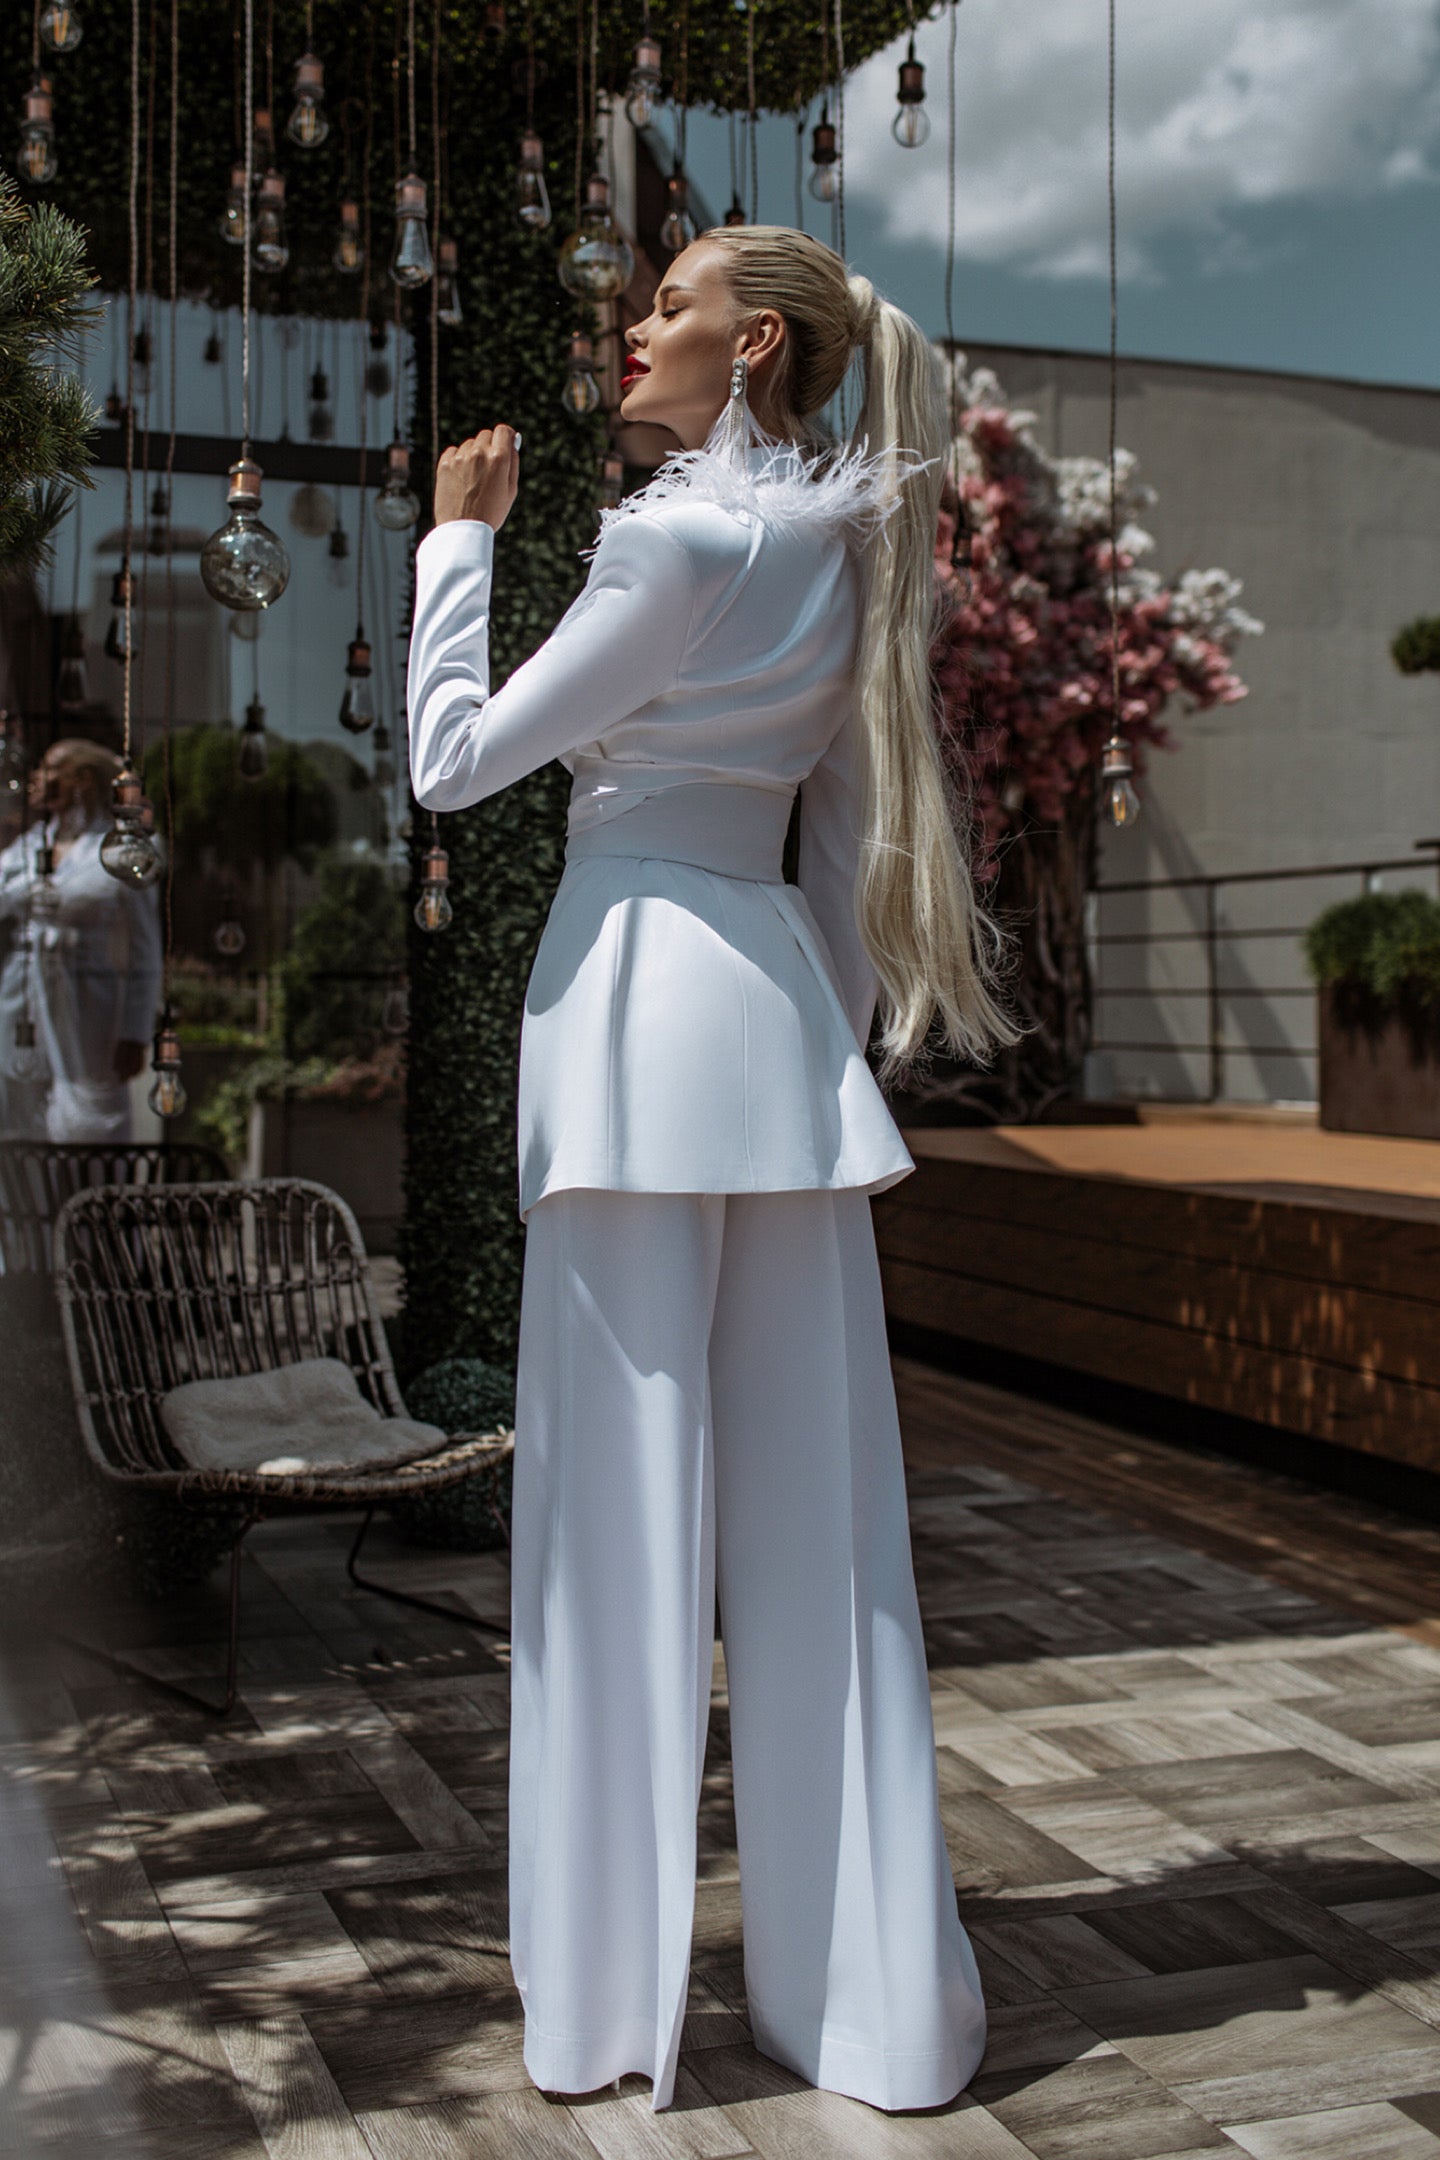 White Satin Oversized Pantsuit With Feathers. – SandraBlush